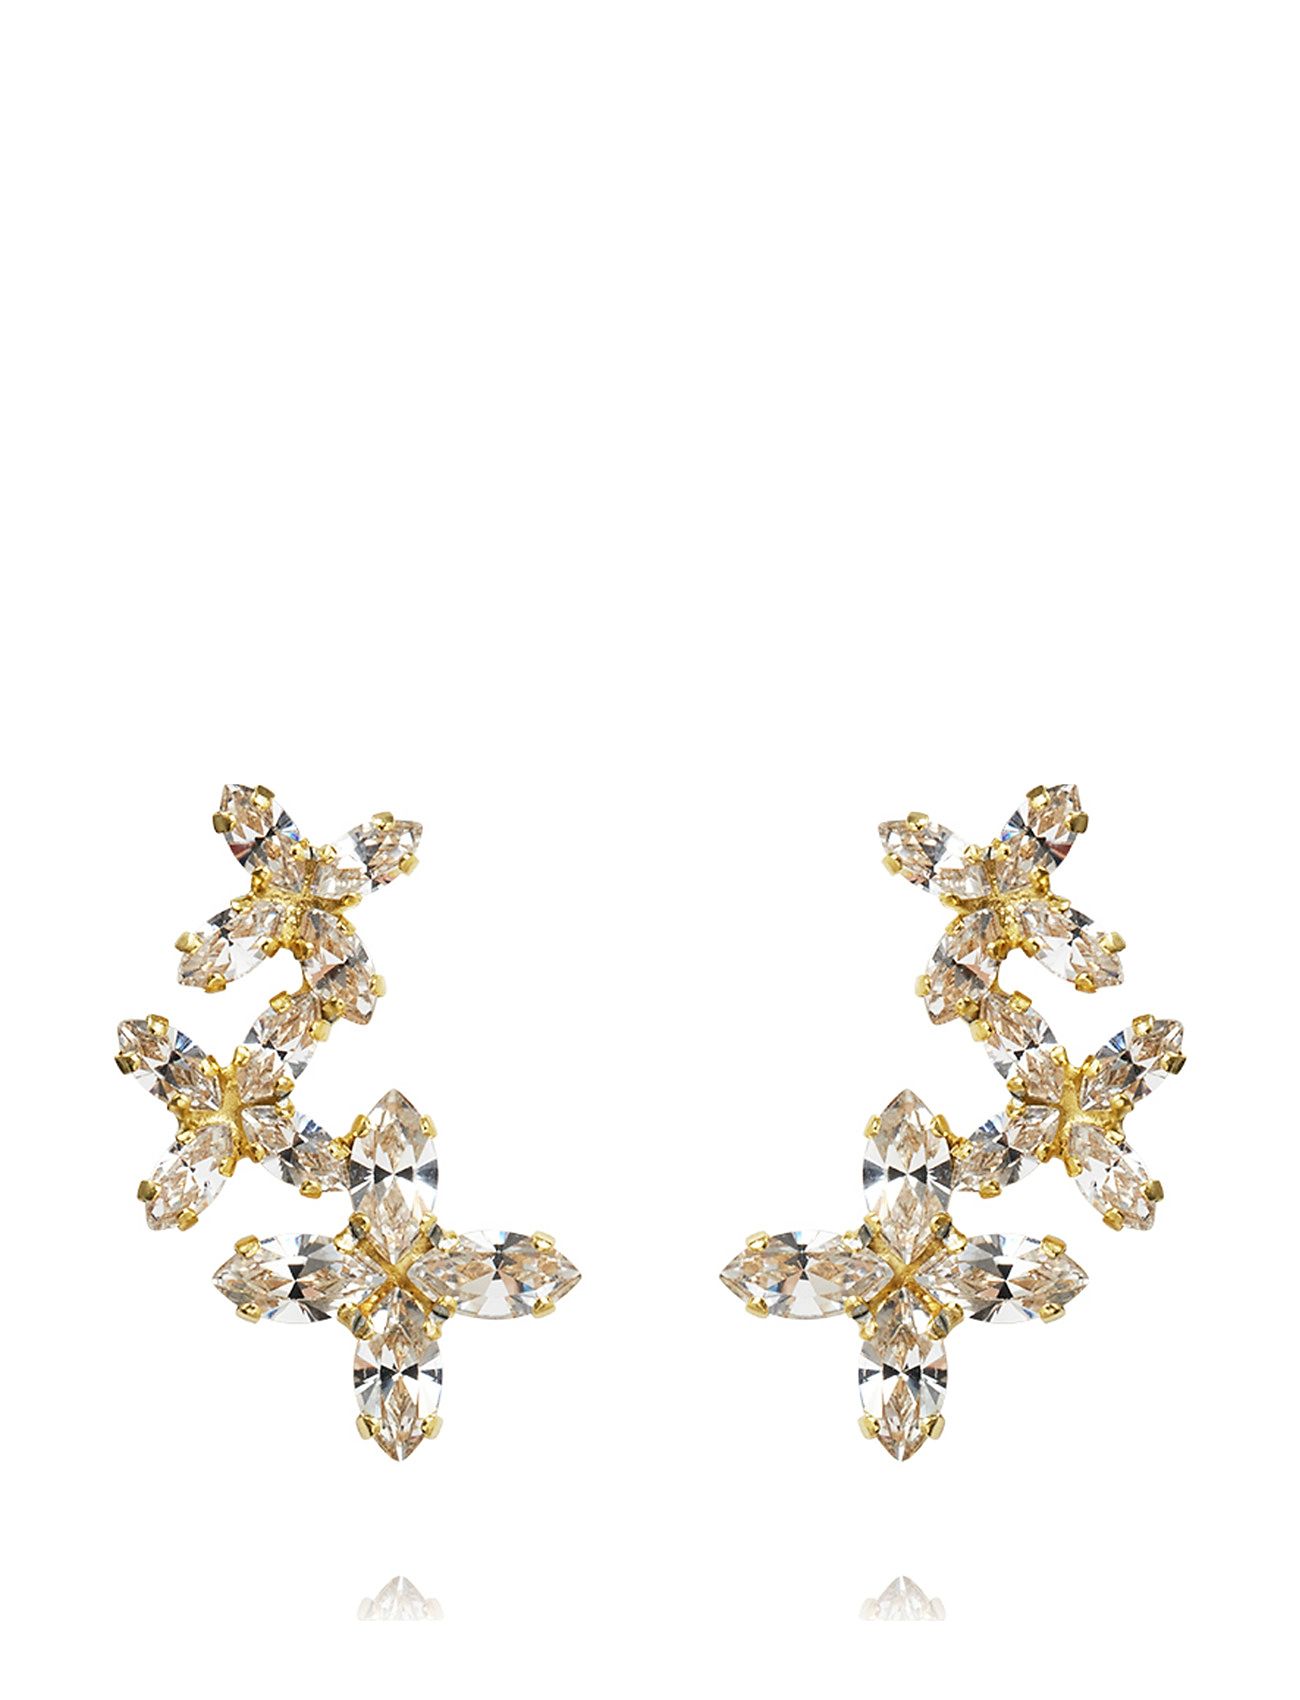 Multi Star Cuff Earrings Accessories Jewellery Earrings Ear Cuffs Gold Caroline Svedbom